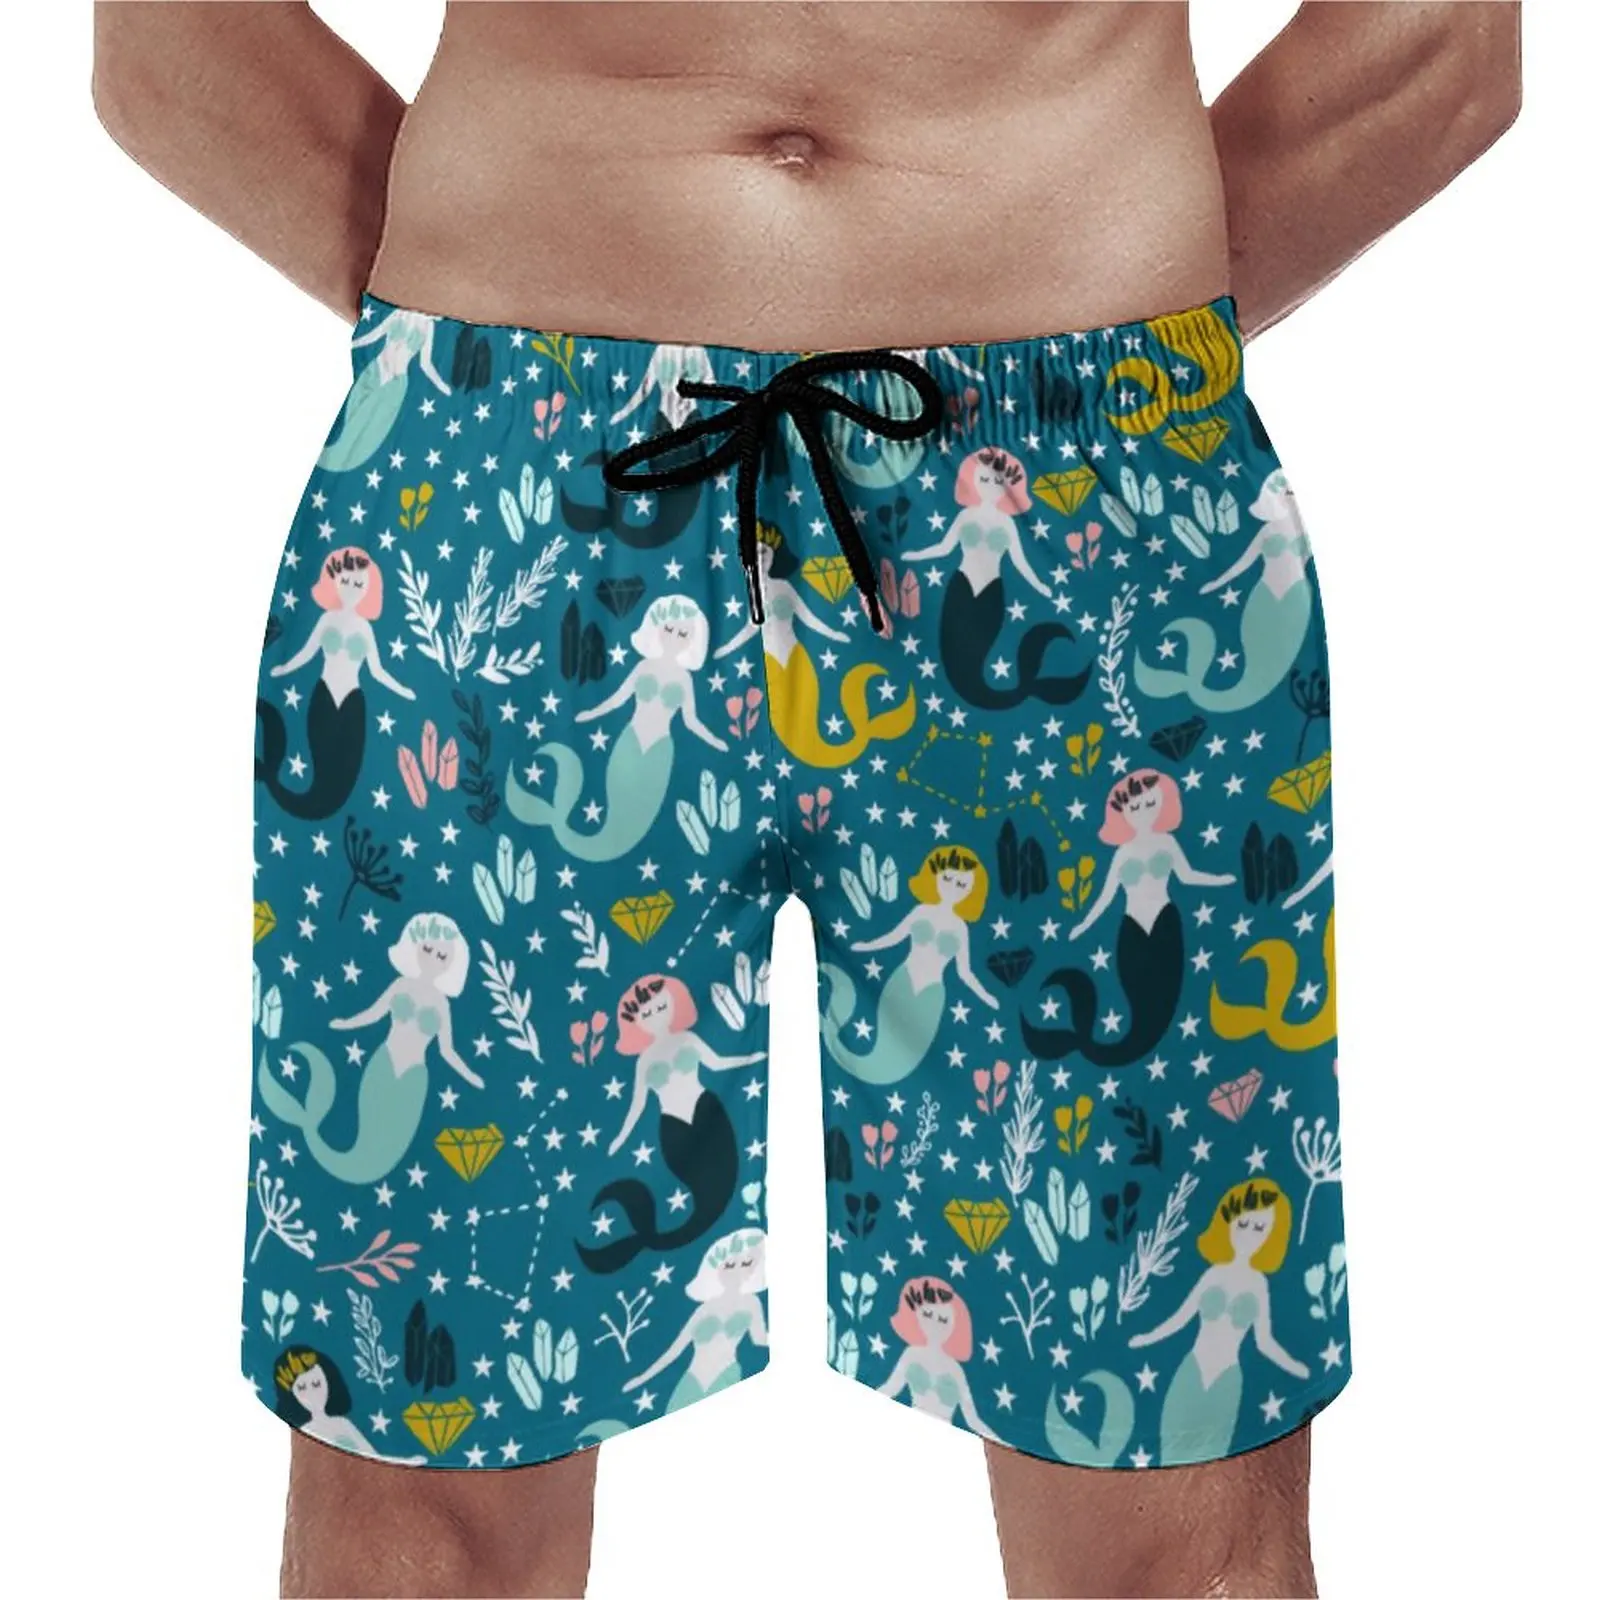 

Шорты пляжные с принтом «Русалка», милые короткие штаны для бега и пляжа, быстросохнущие модные плавки оверсайз с принтом звезд и цветов, на лето